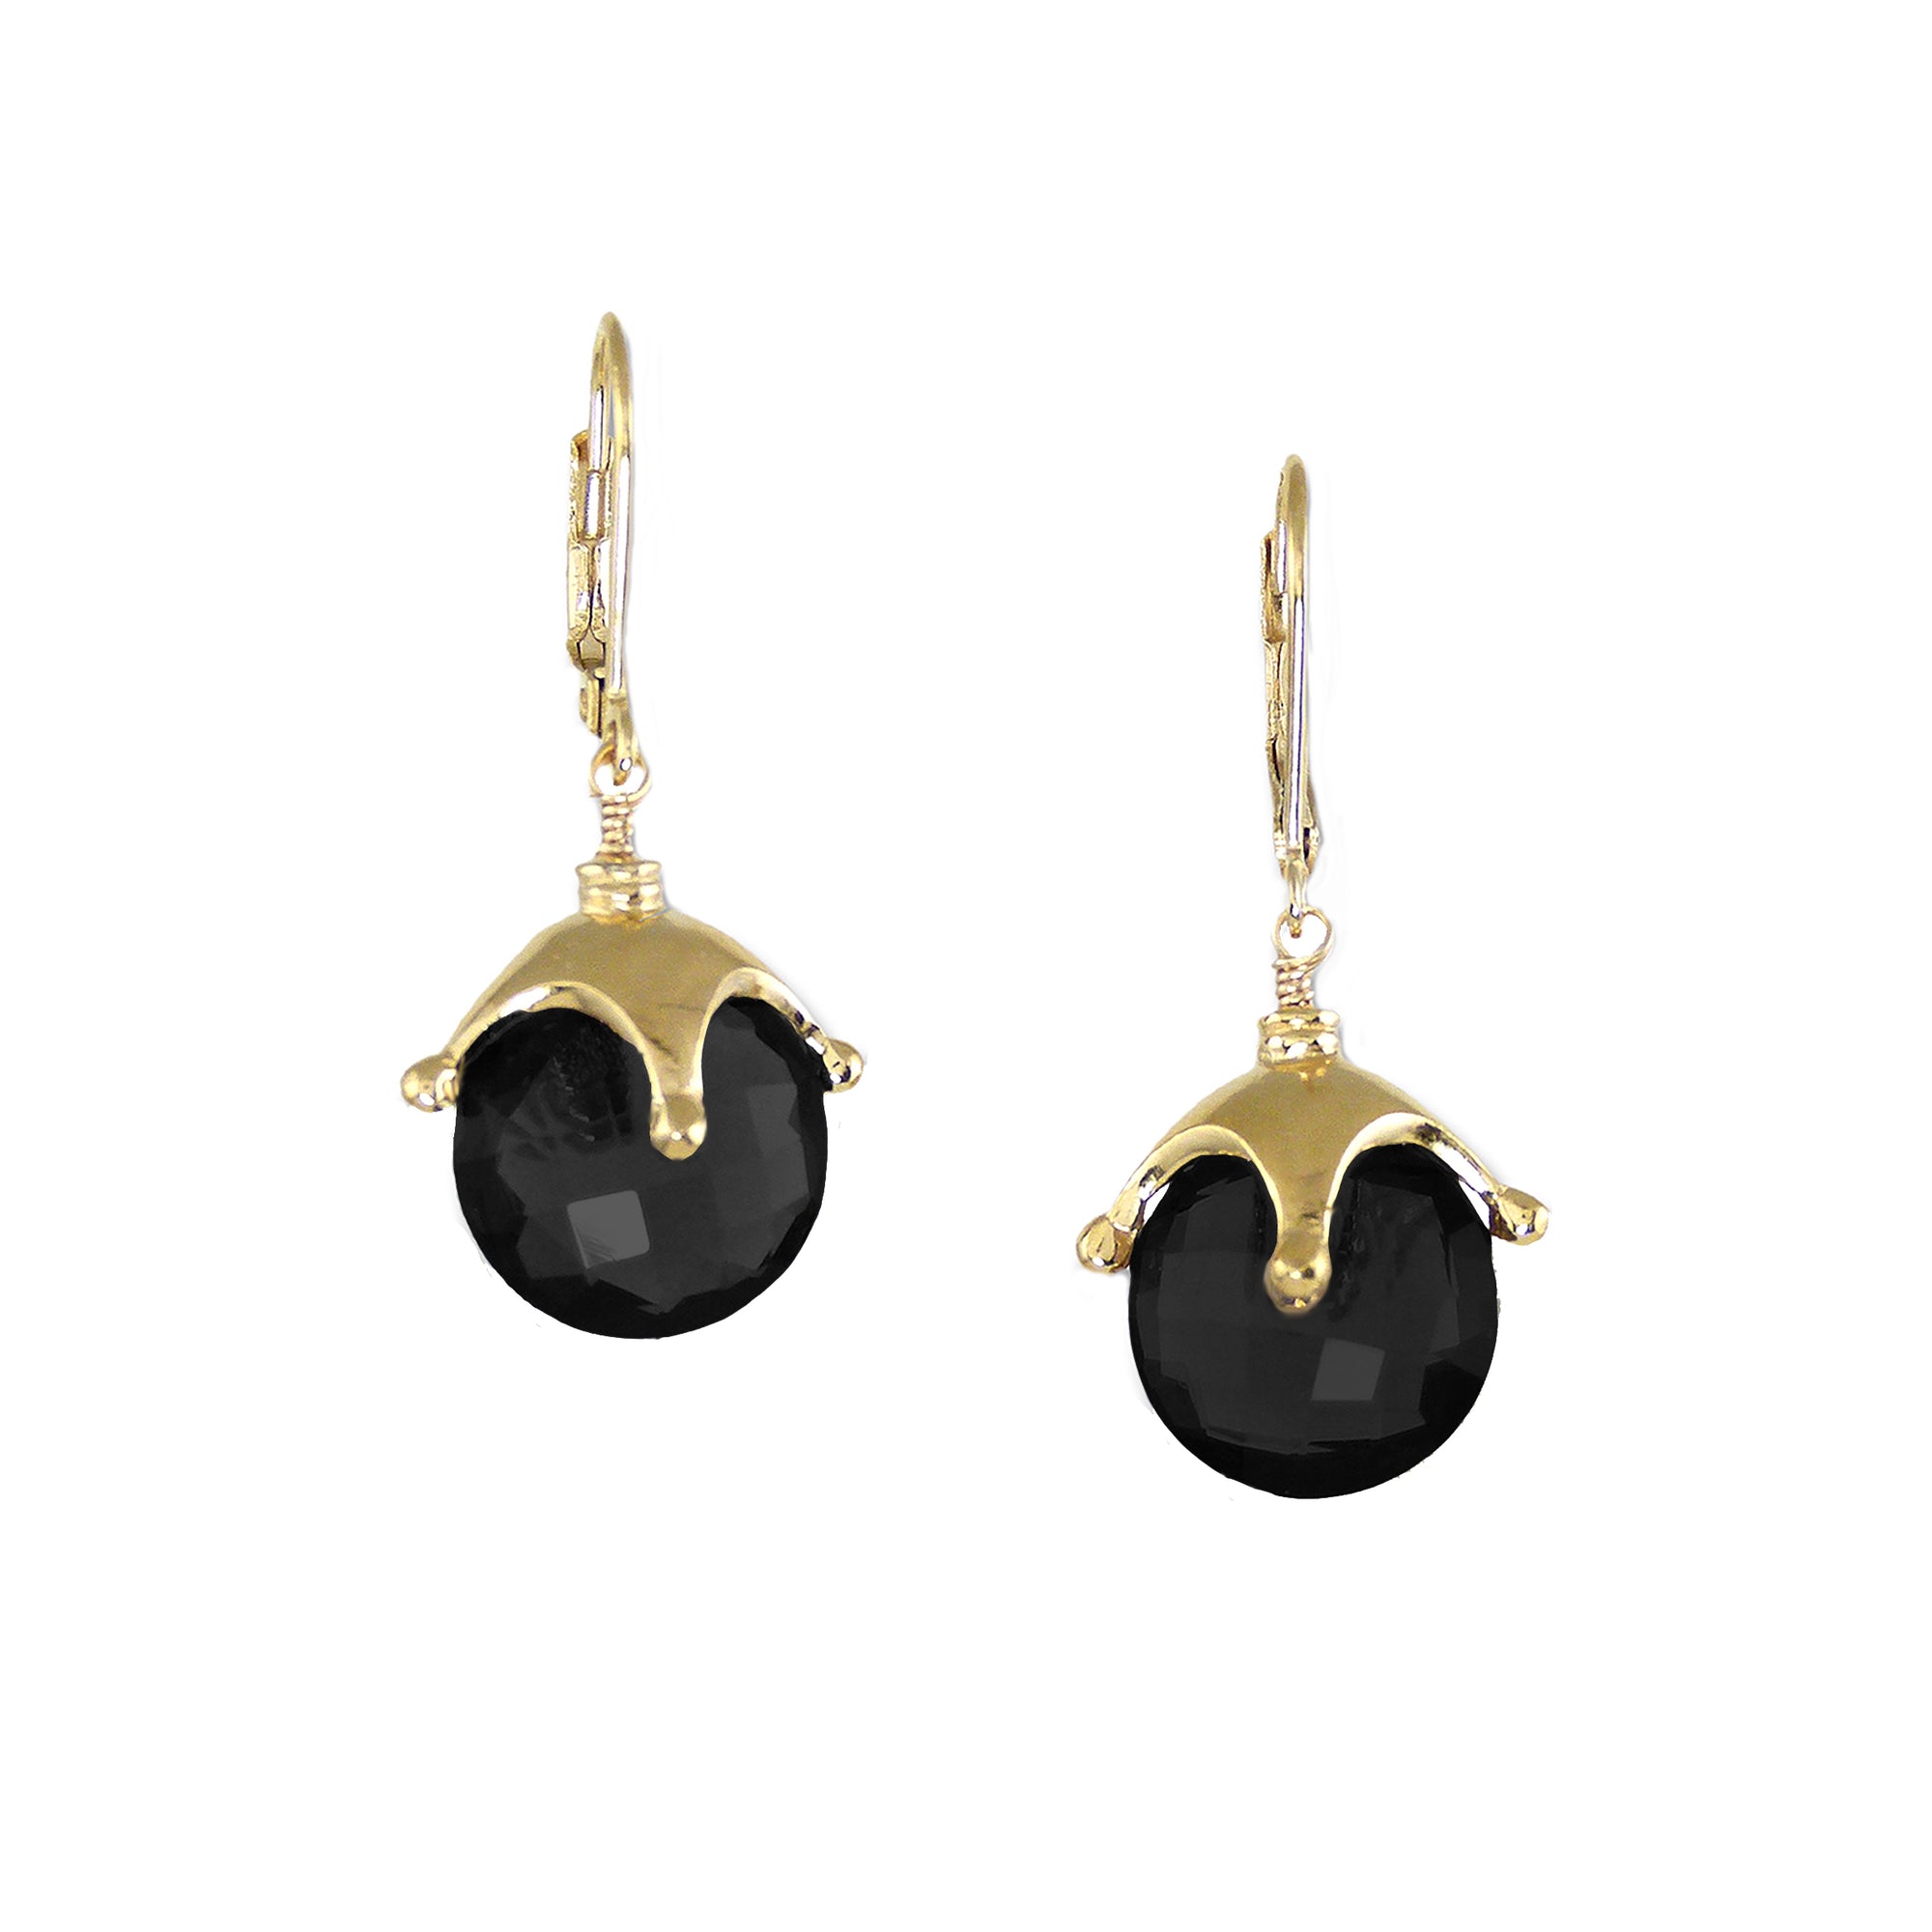 Jester Cap Earrings - Gold, Black Onyx